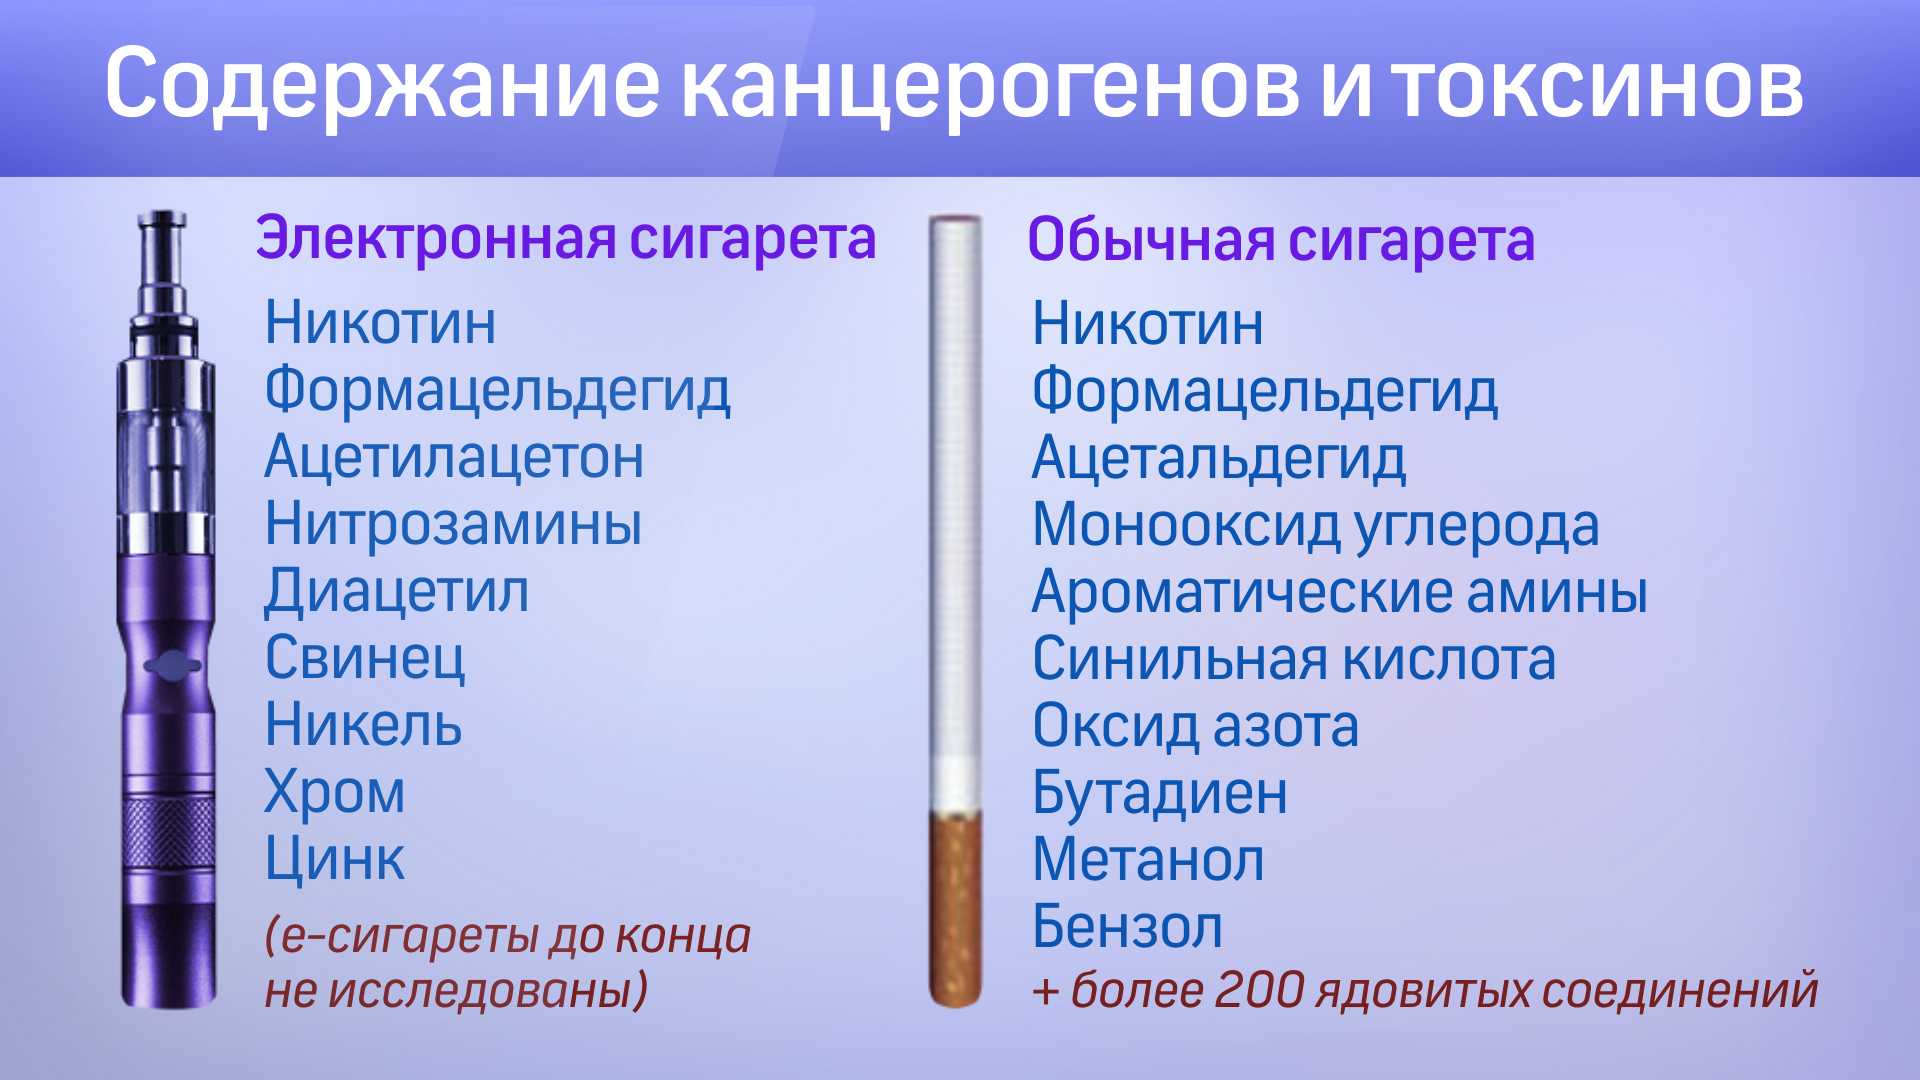 Сколько И Где Купить Электронную Сигарету